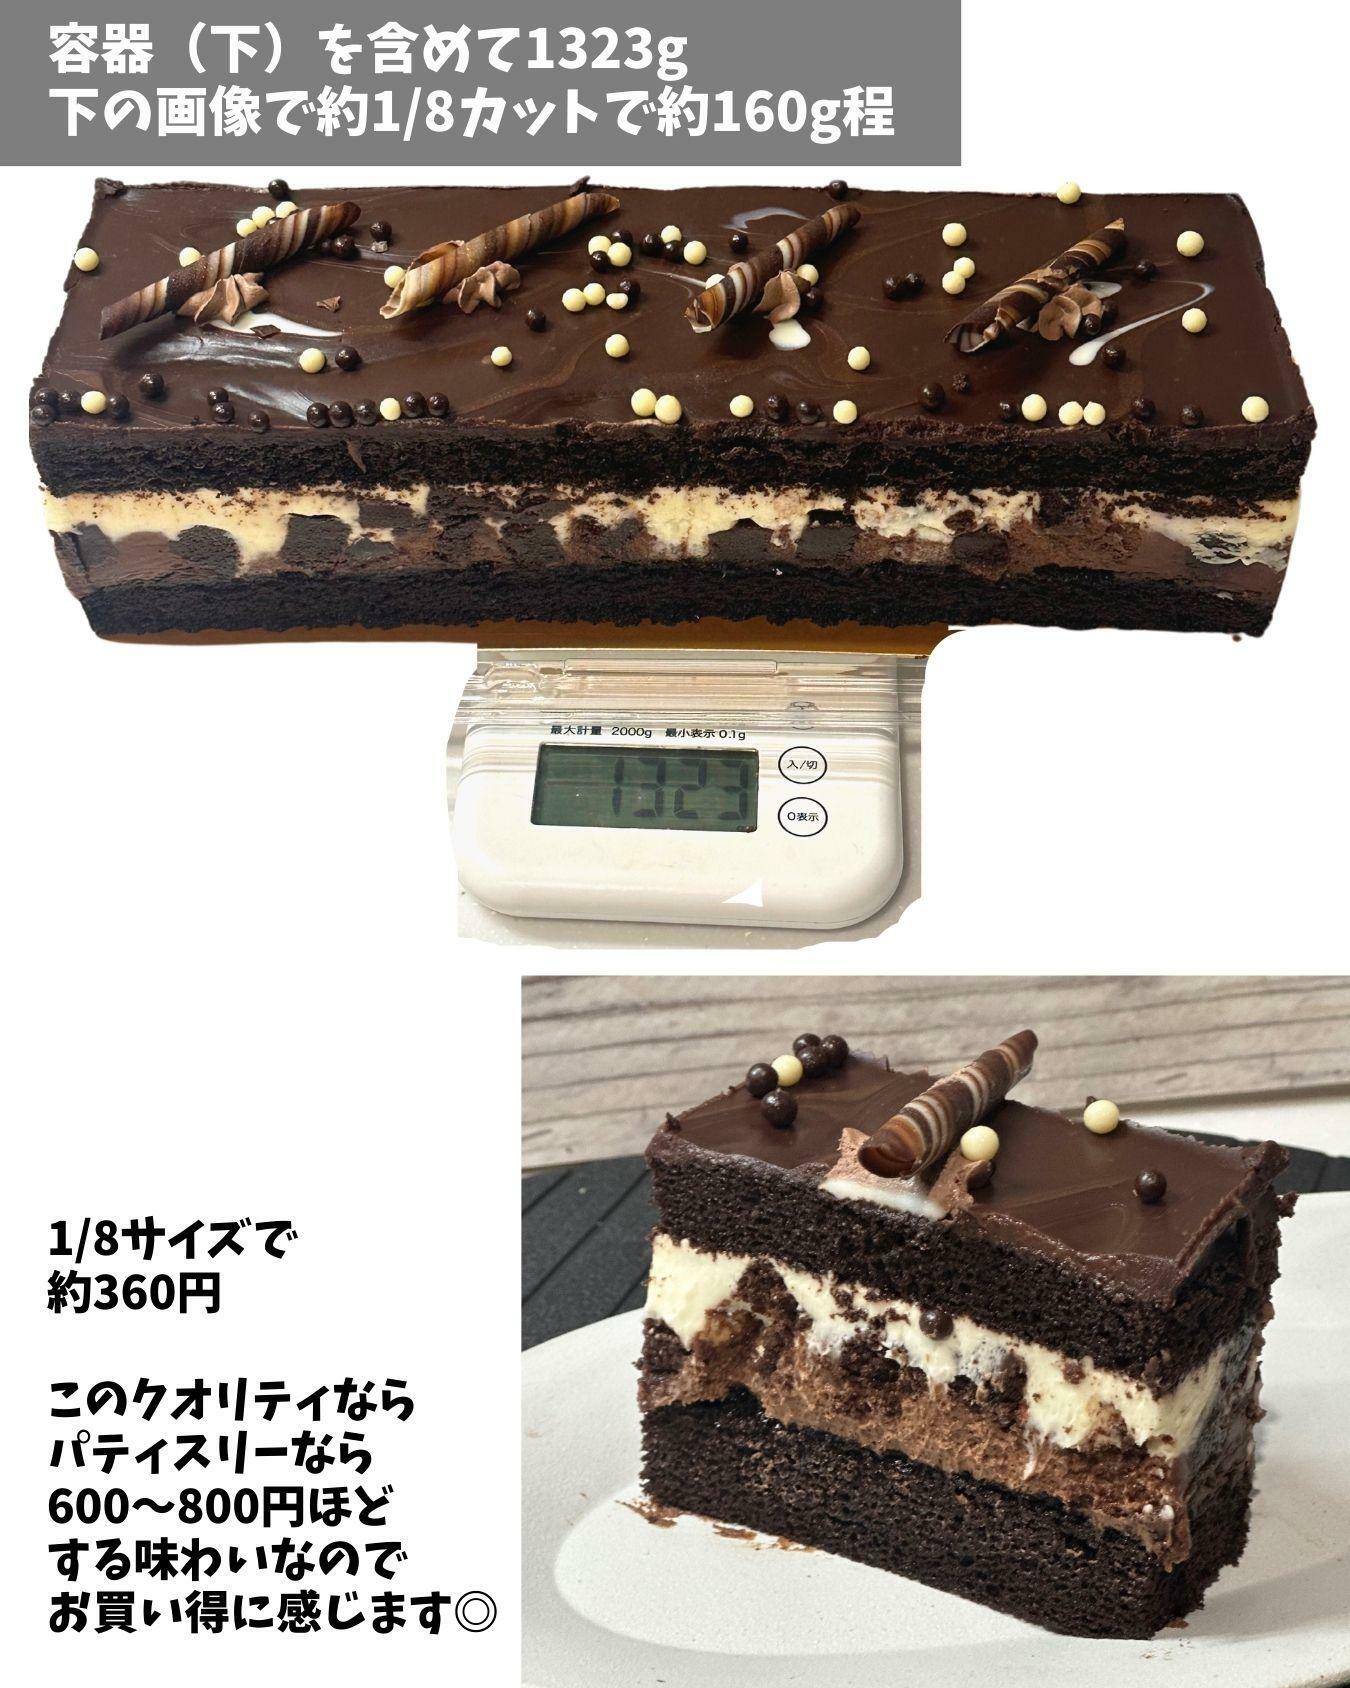 コストコのタキシードケーキは8等分で360円